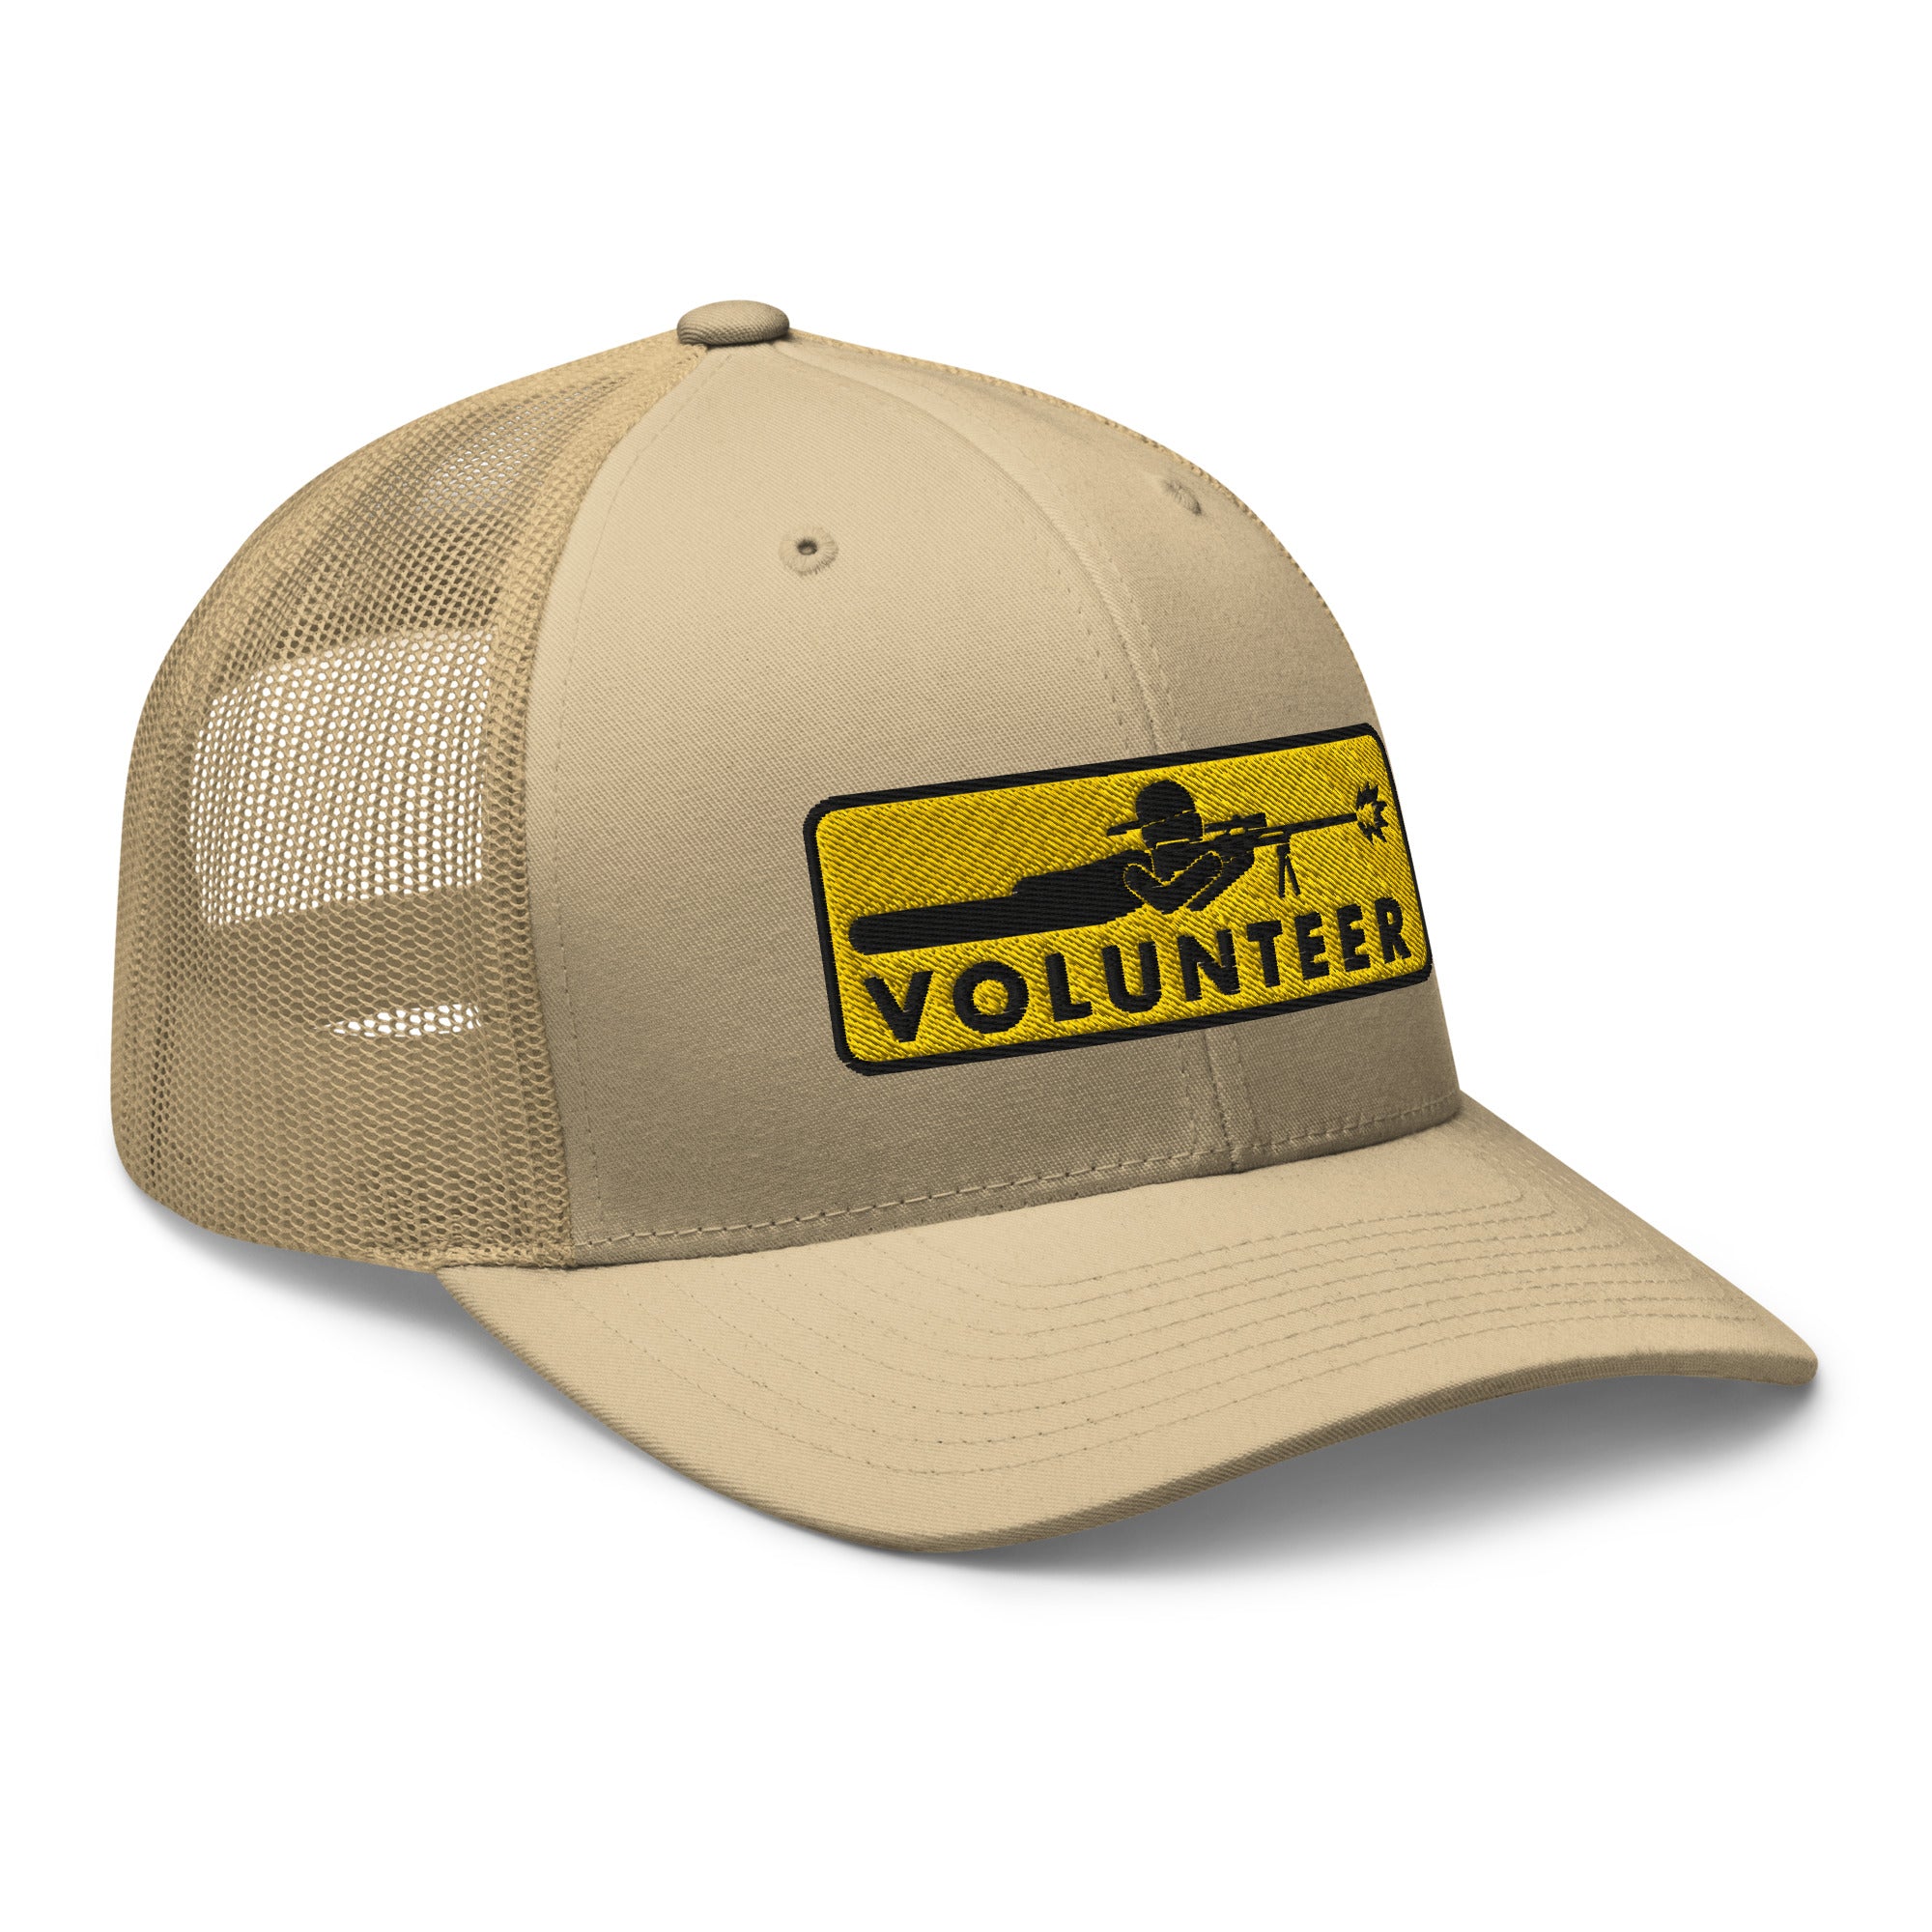 Volunteer Sharpshooter Range Cap